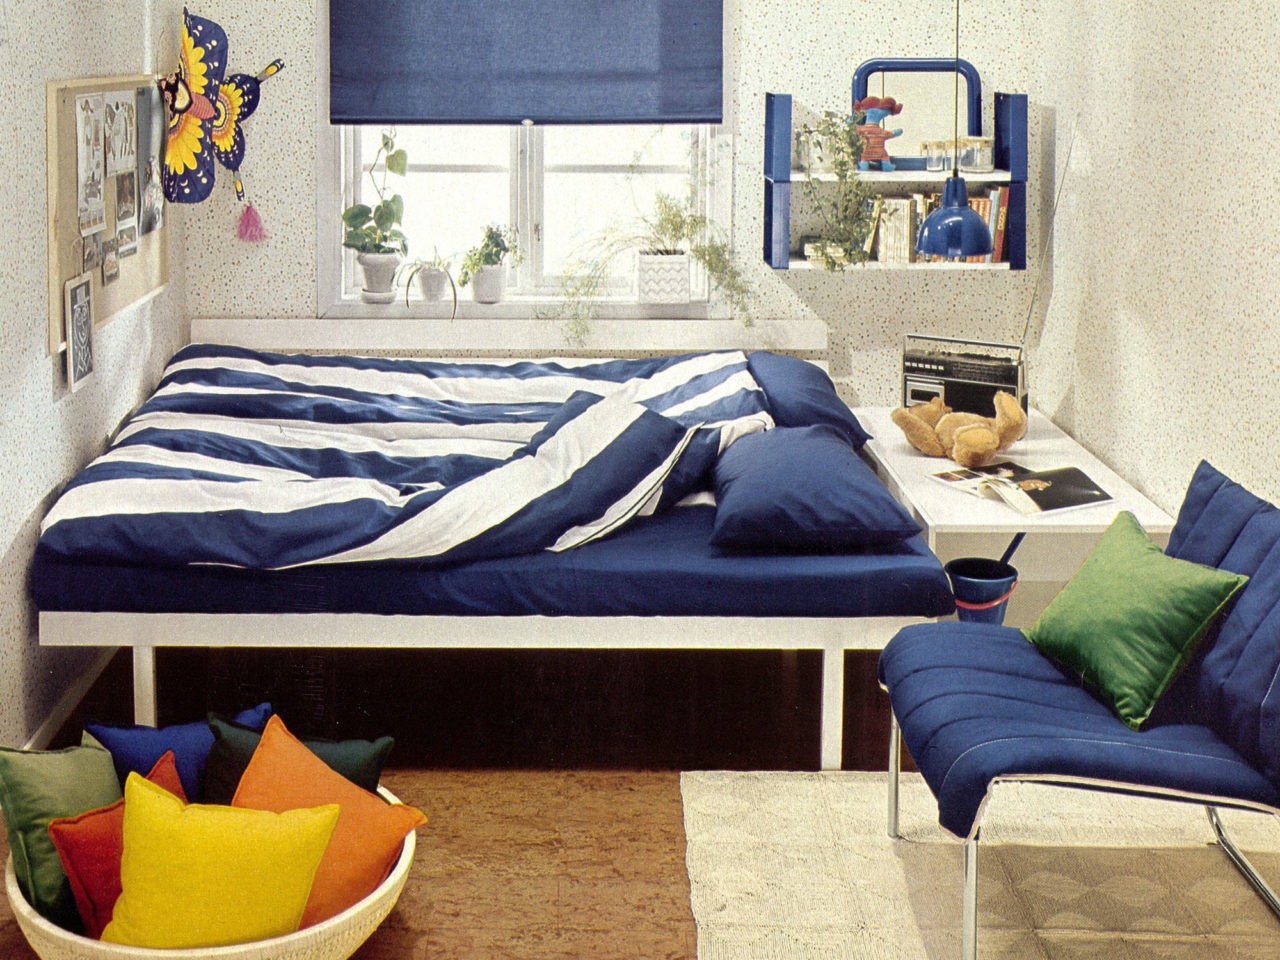 Habitación con estampado de lunares, suelo de corcho, ropa de cama a rayas azules y blancas, y detalles en azul.